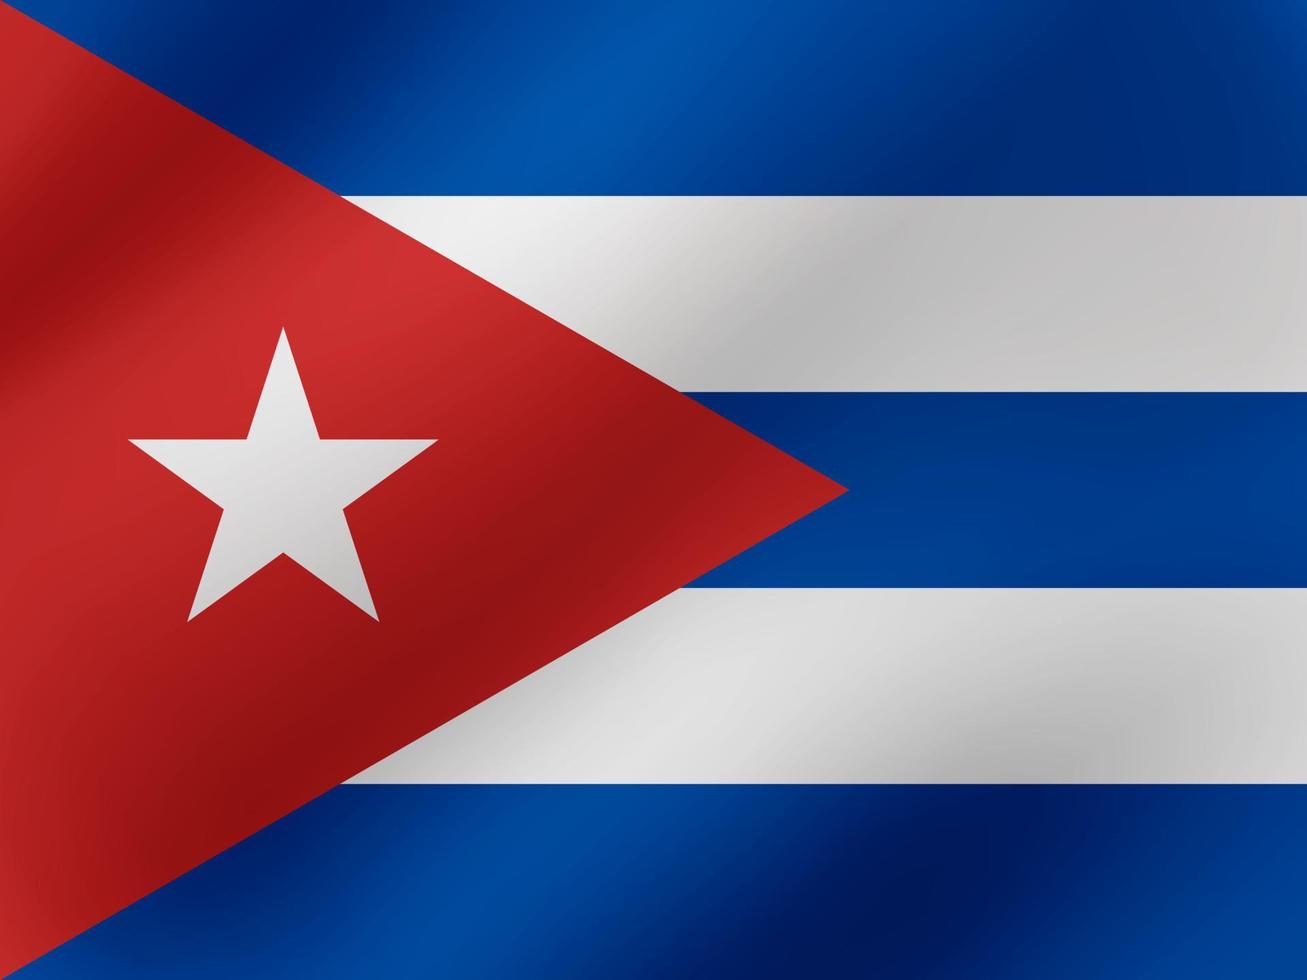 illustrazione ondulata realistica di vettore del design della bandiera di Cuba